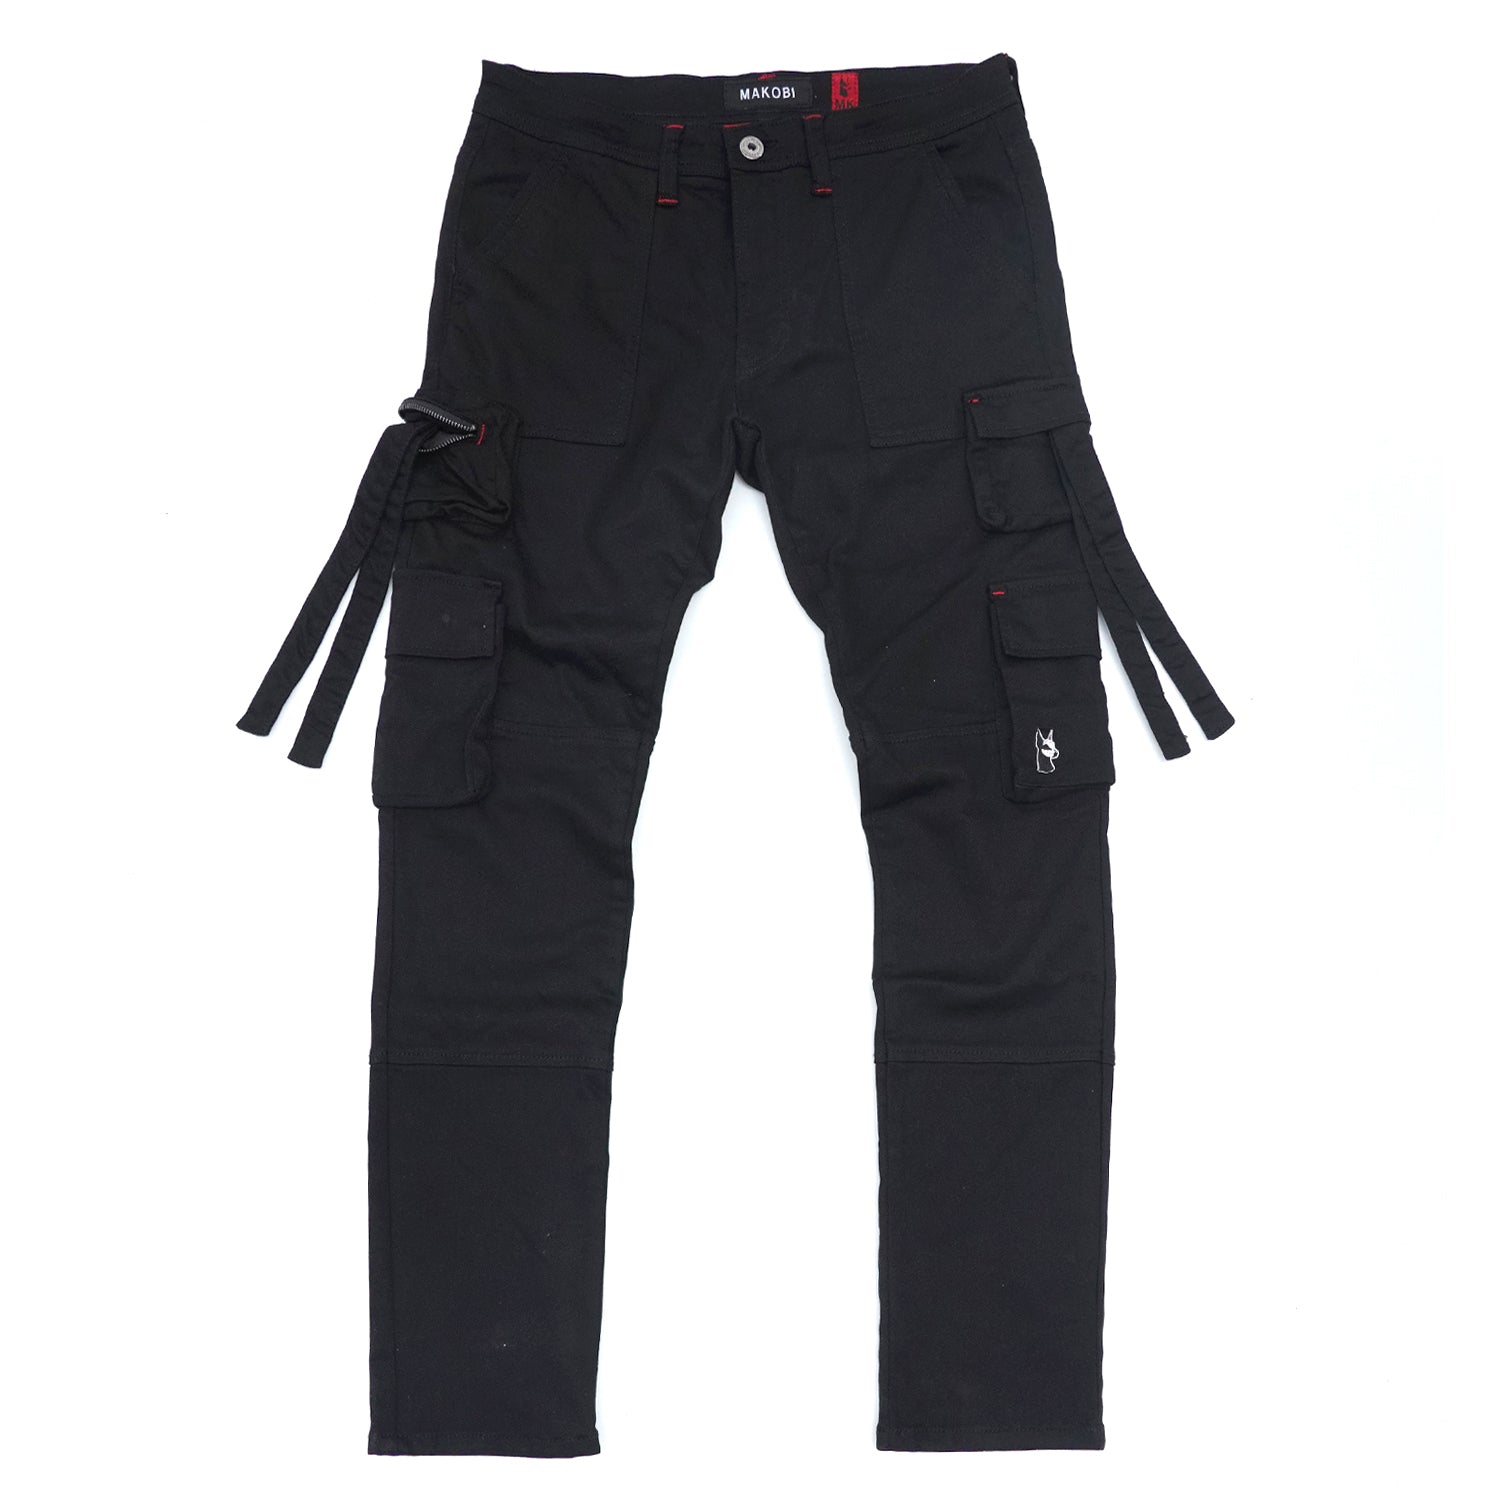 M1930 Aries Cargo Denim Jeans - Black/Black